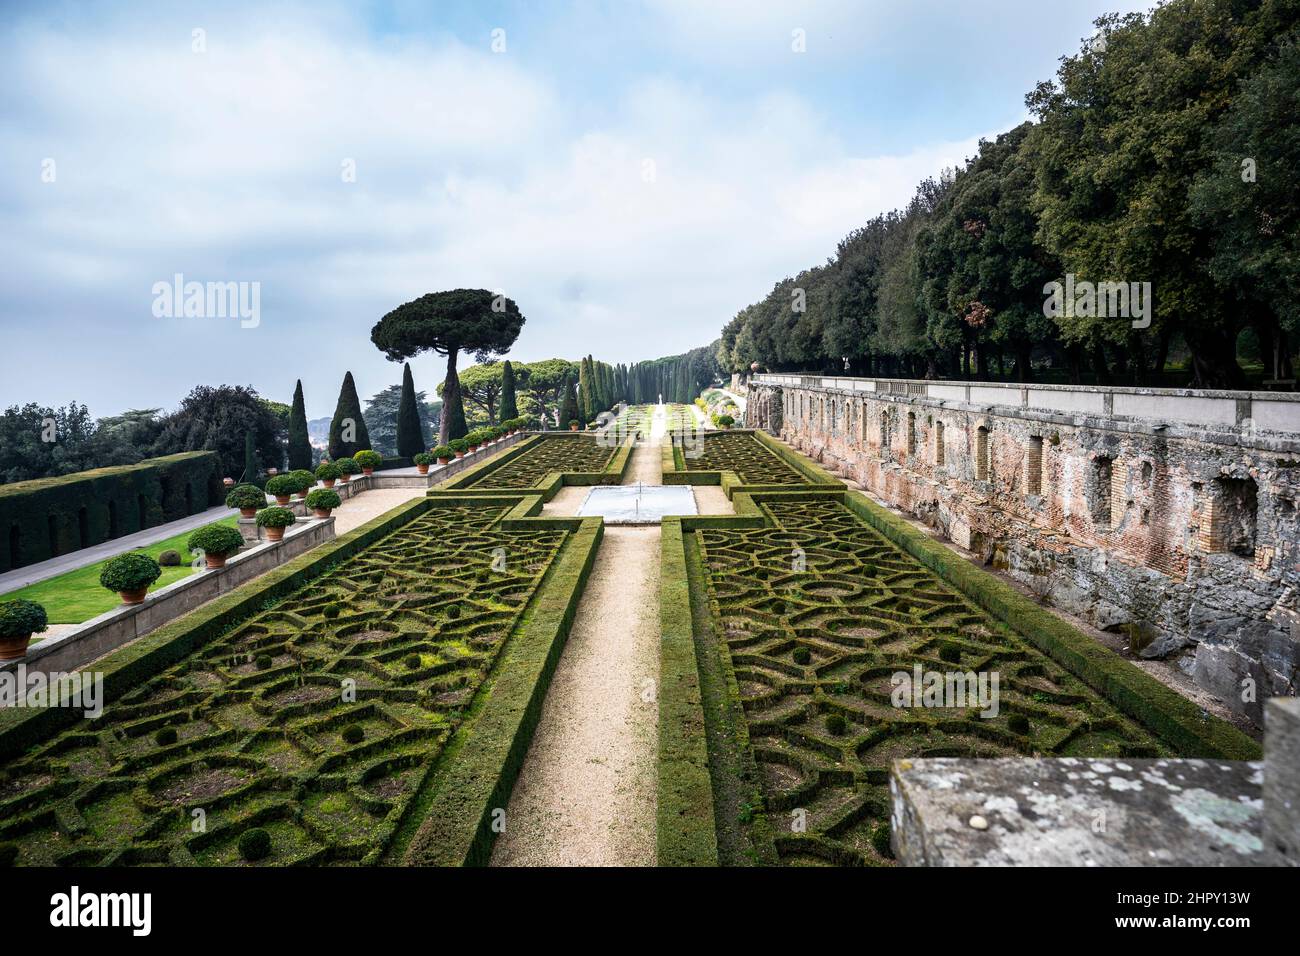 Les jardins du palais apostolique, résidence d'été des Papes, Castel Gandolfo, Italie Banque D'Images